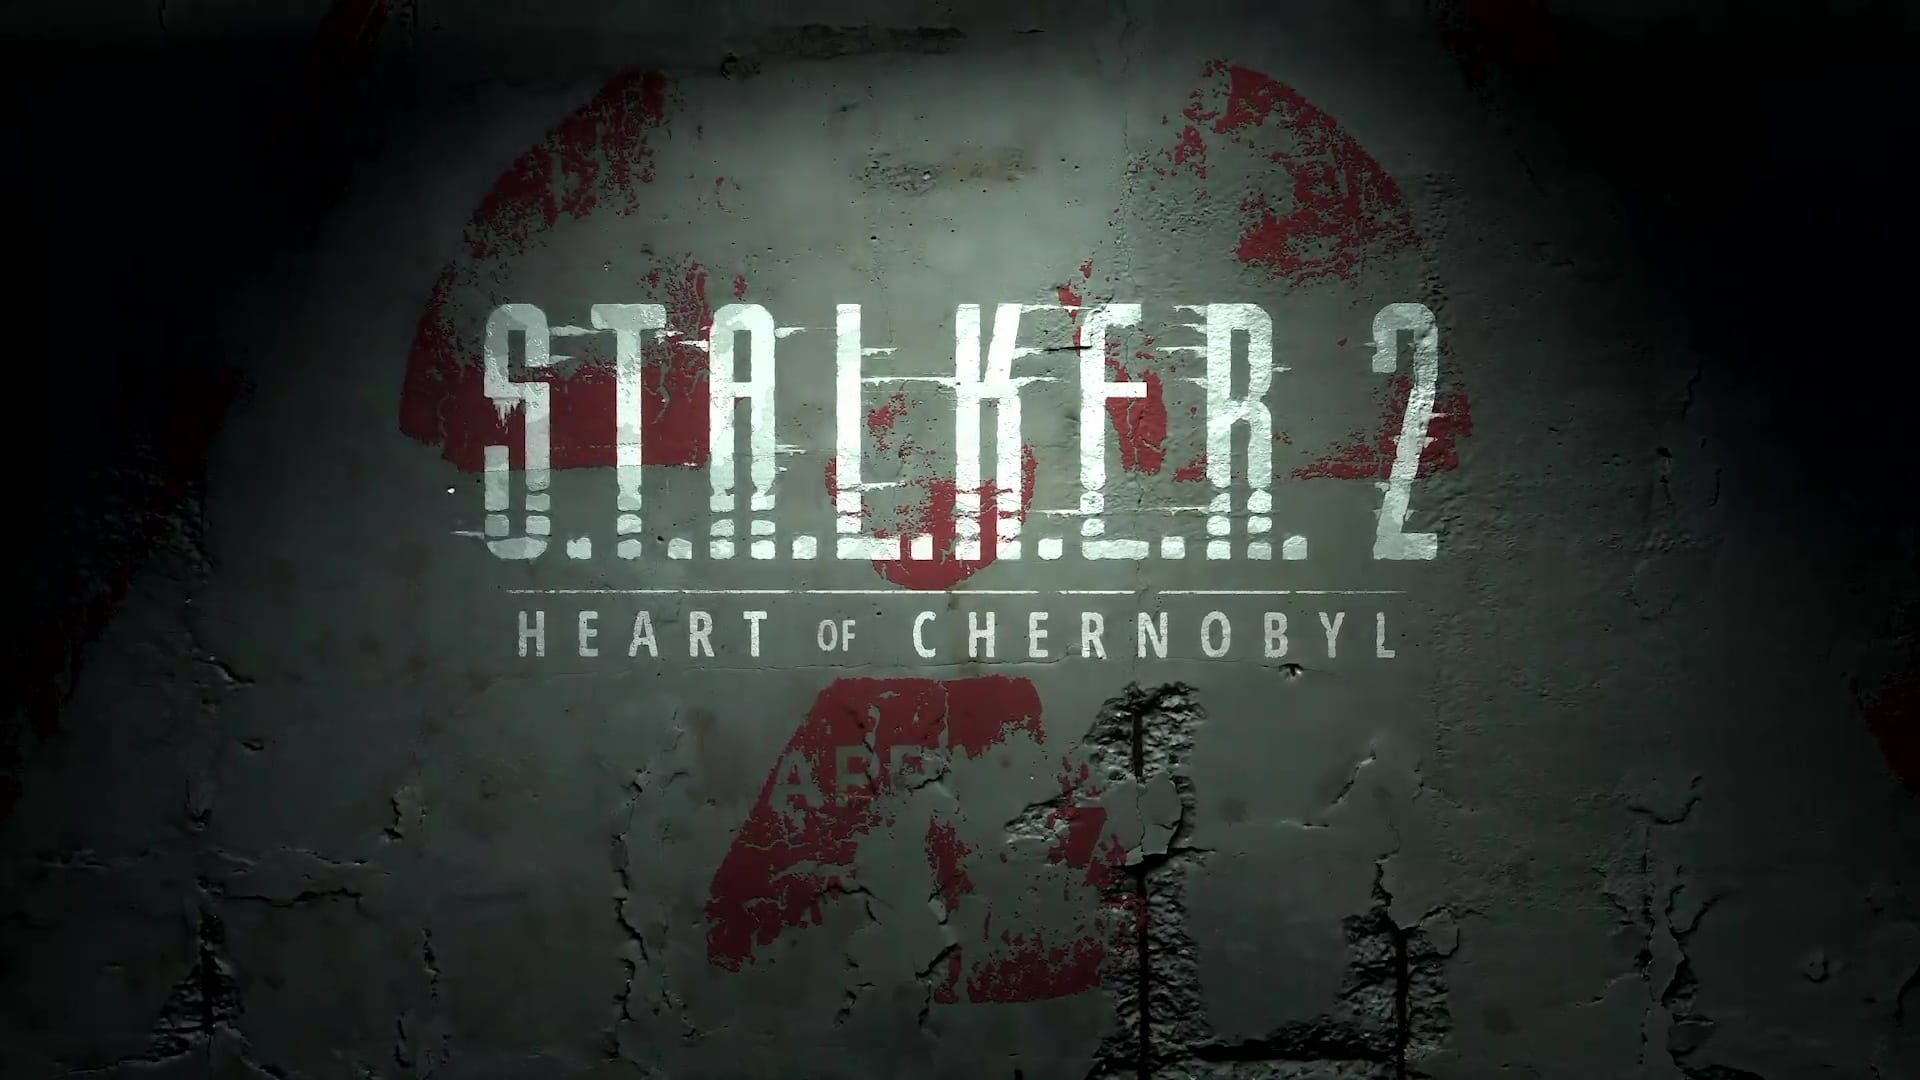 Stalker 22: Heart of Chernobyl Release Date Announced  TechRaptor